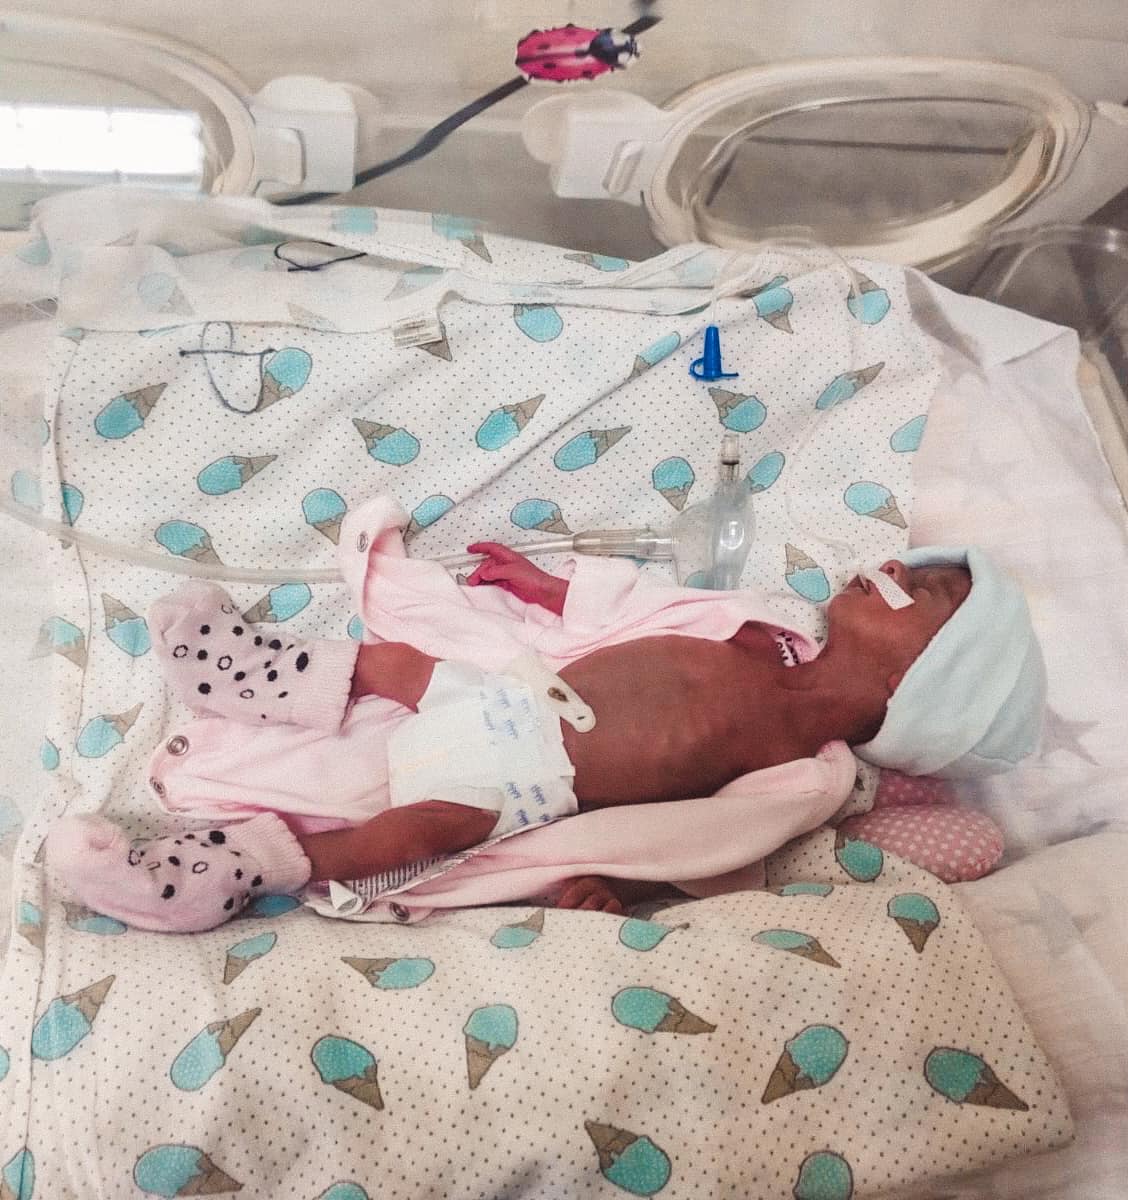 У Рогатині медики врятували немовля з вагою 775 грамів (ФОТО)